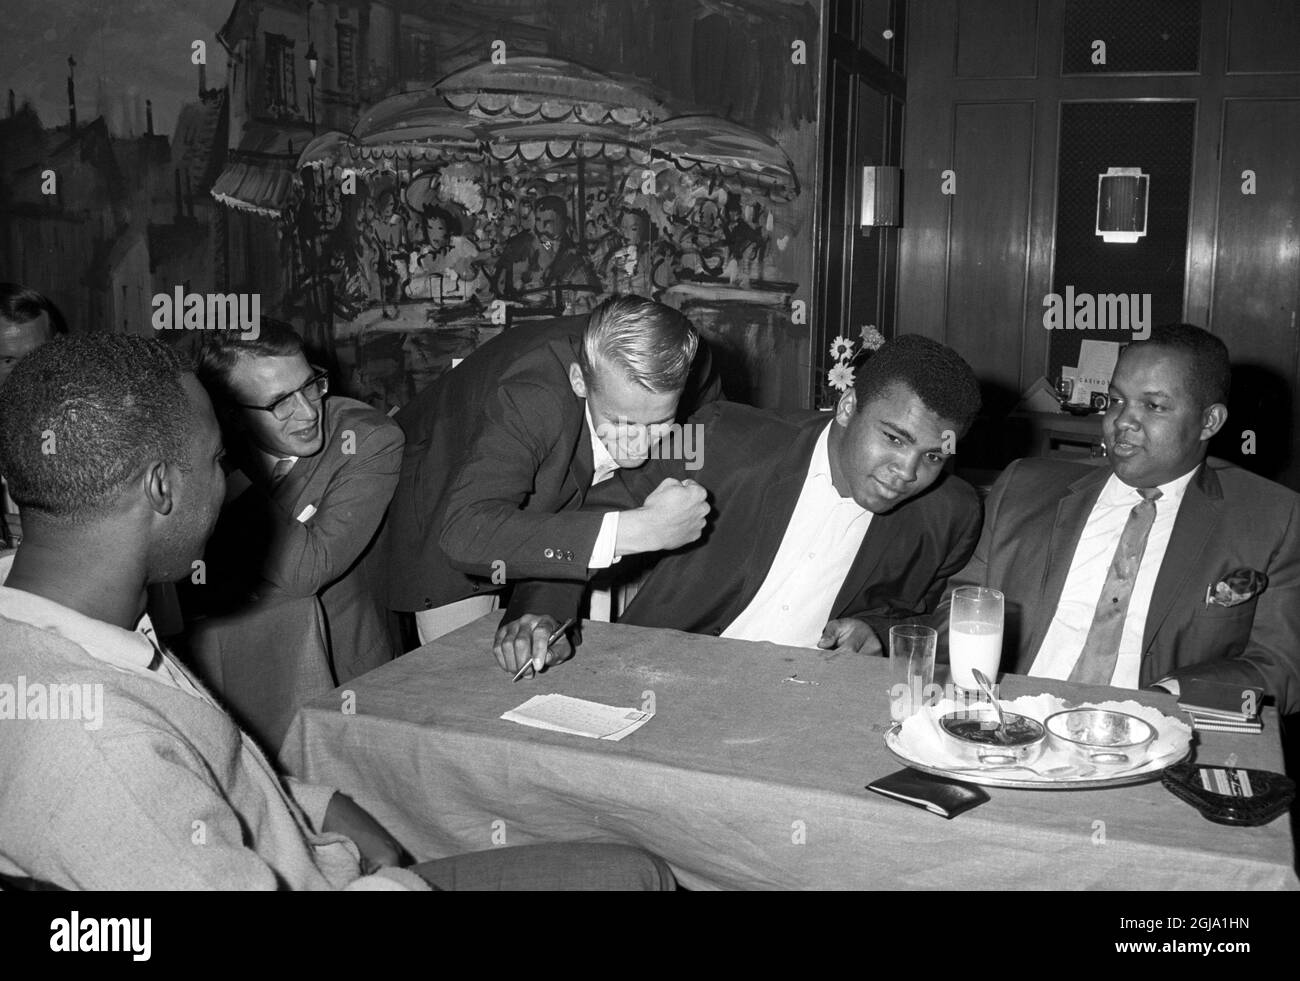 ARKIV STOCCOLMA 196508. Il campione del mondo di boxe Muhammad Ali è visto con un ventilatore ad un ristorante a Stoccolma, Svezia 1965. Ali era in Svezia per la lotta in mostra. Foto: Sven-Gosta Johansson / Scanpix / Kod: 262 Foto Stock